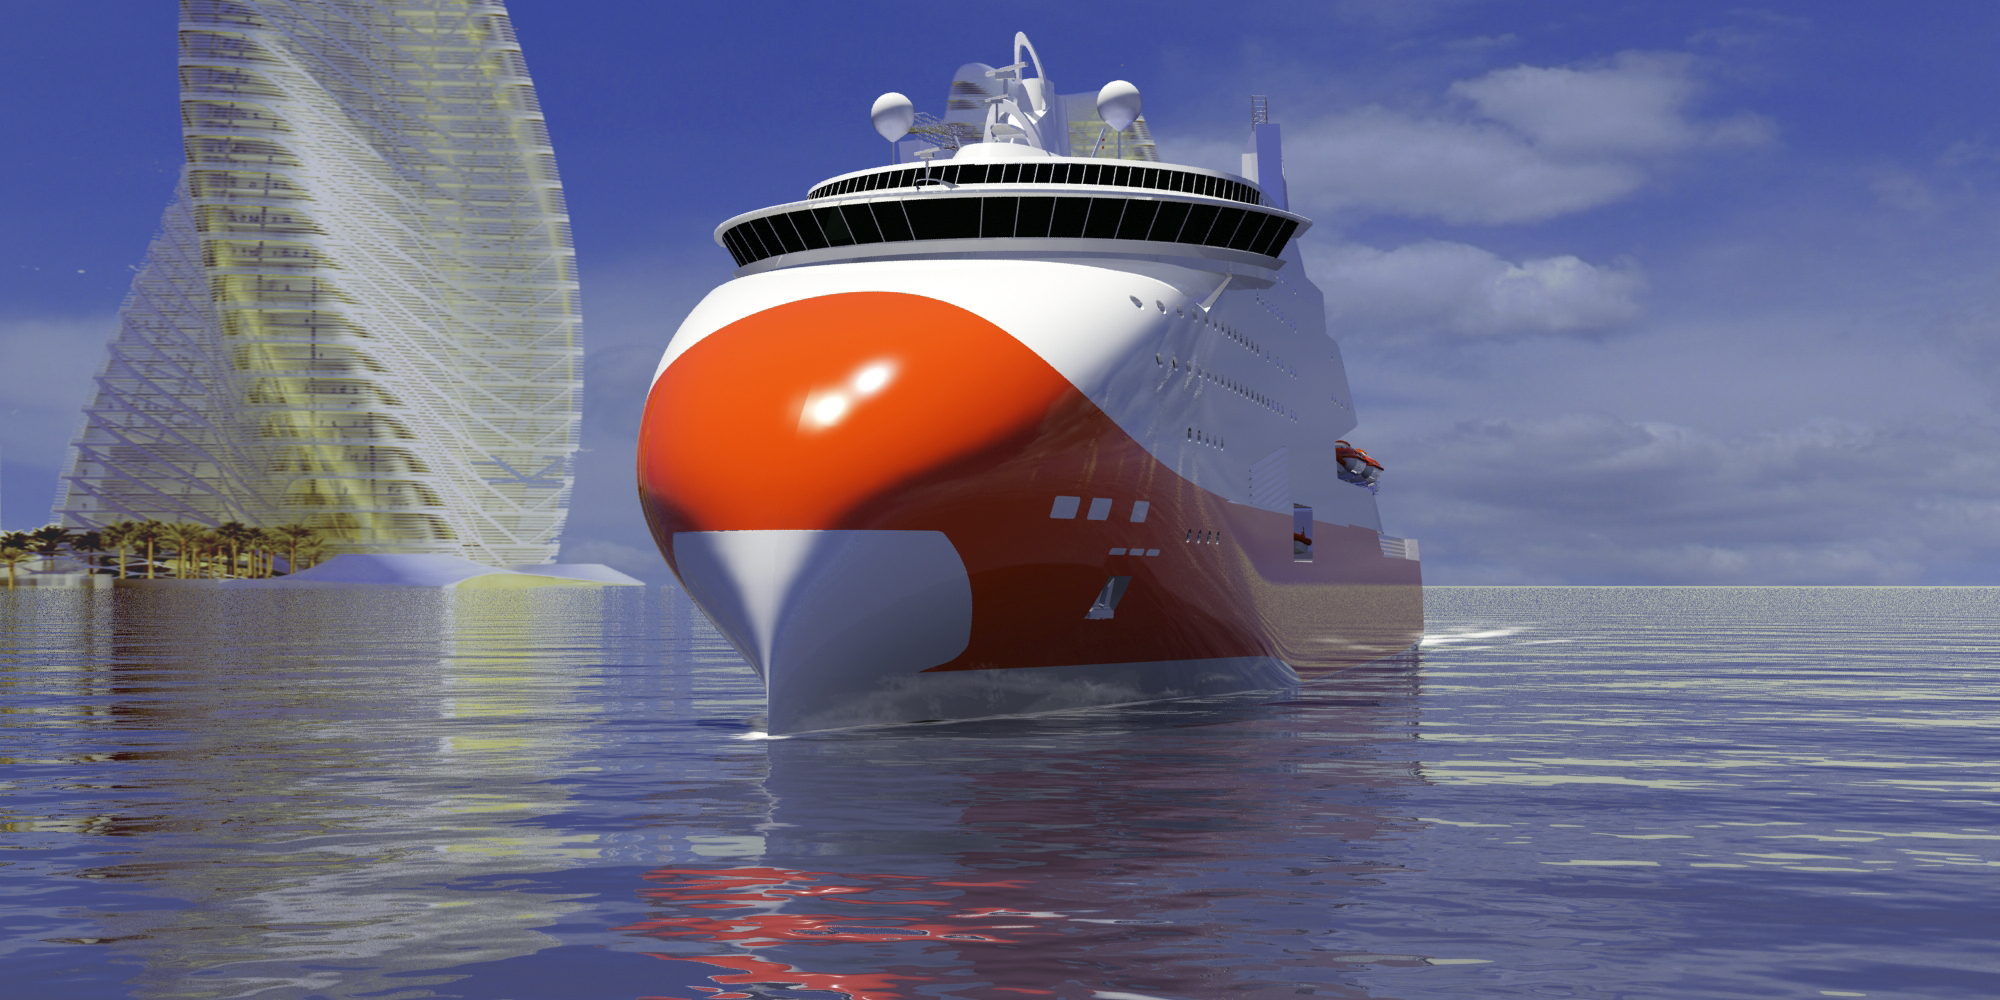 Le projet de ferry au GNL réalisé par STX France pour Brittany Ferries a été abandonné mais l'idée de grands navires propulsés grâce au gaz naturel perdure. © STX